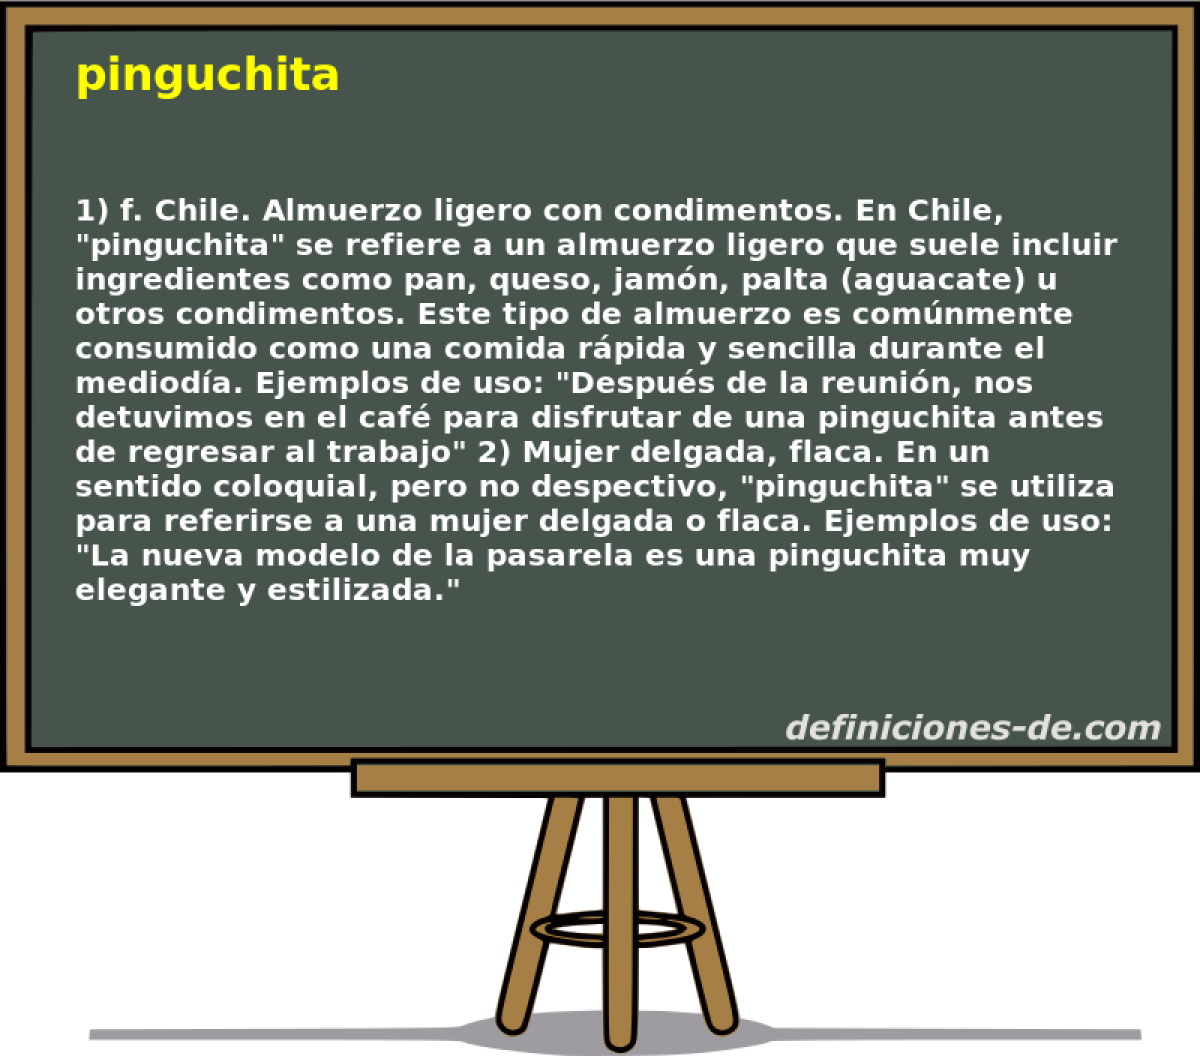 pinguchita 